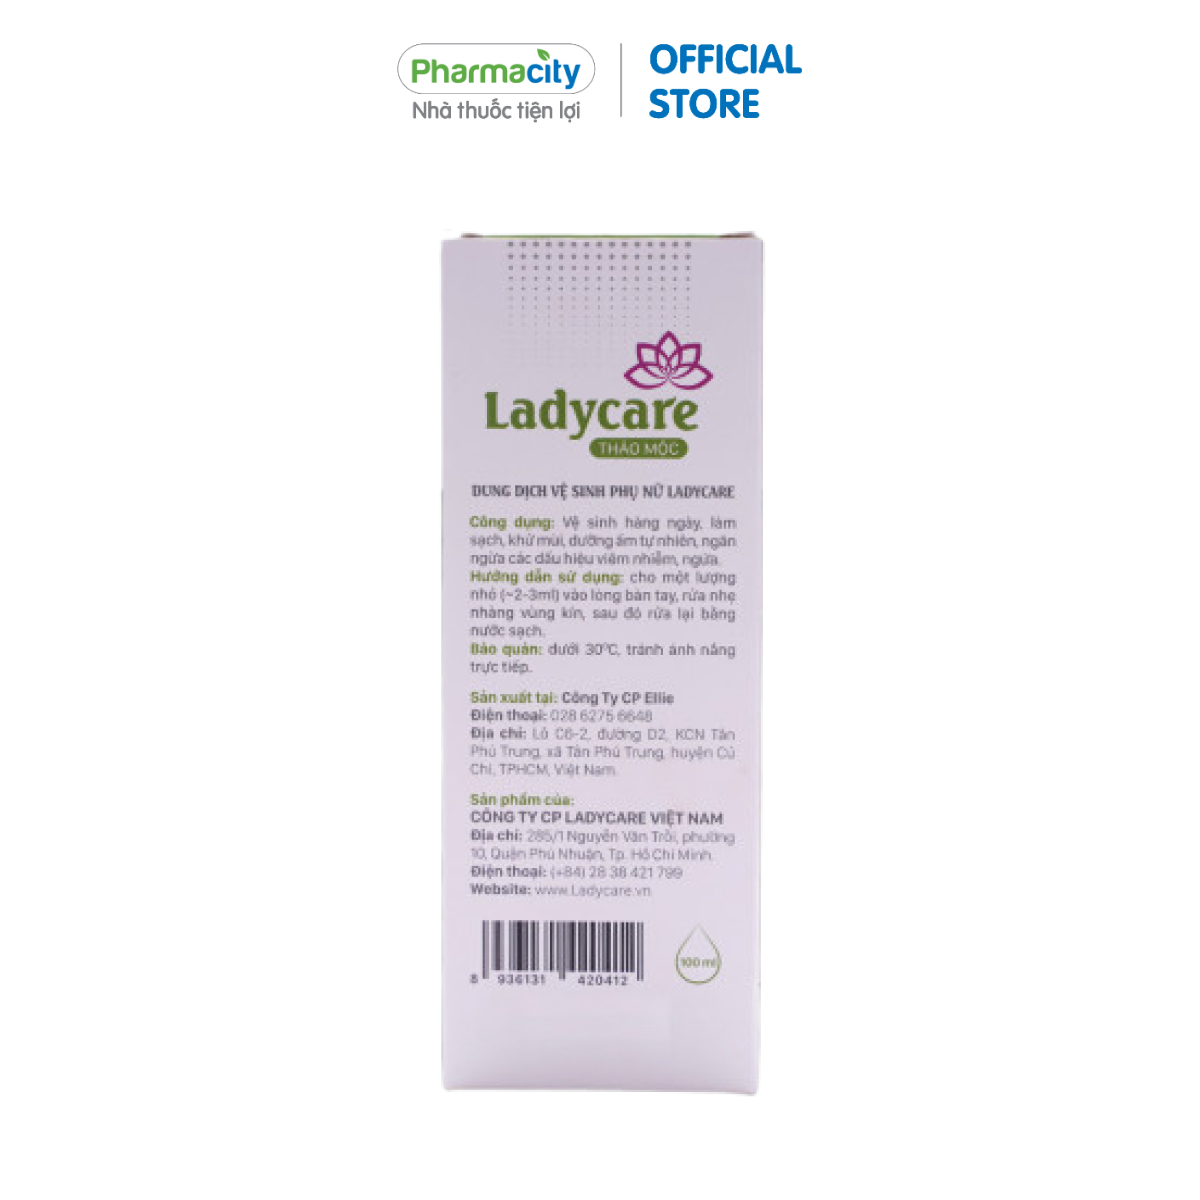 Dung dịch vệ sinh phụ nữ chiết xuất thảo mộc Ladycare (Chai 100ml)